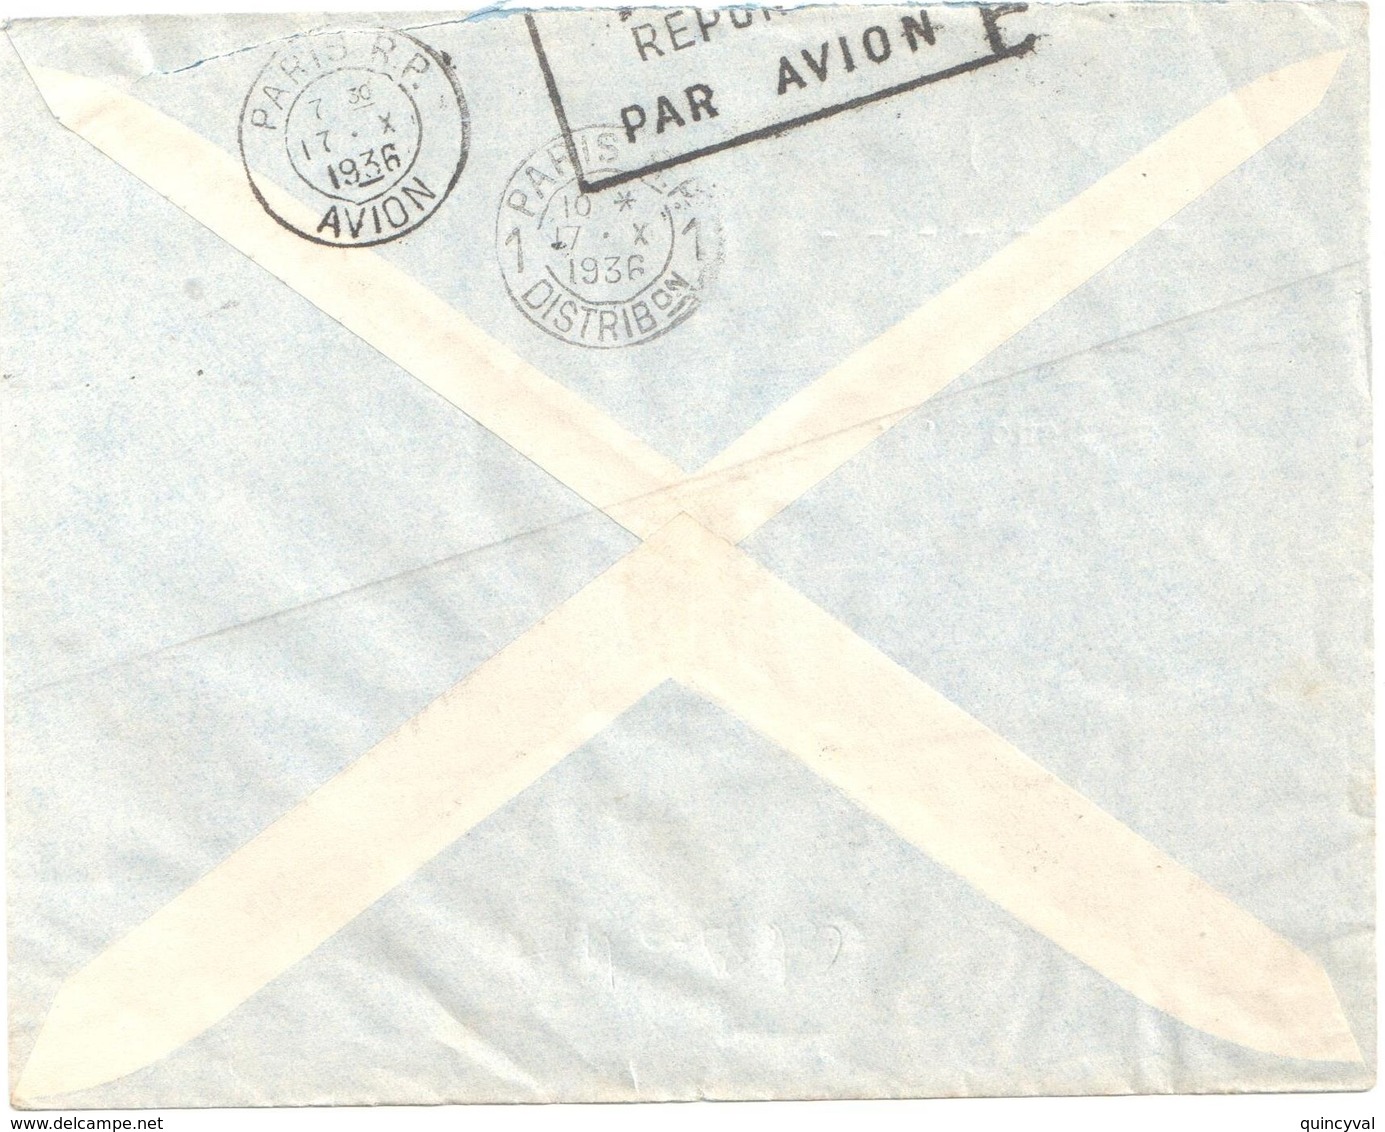 GAO Soudan Français Lettre PAR AVION Ob 10 10 1936 Arrivée Verso 17/10/1936 1,25f Batelier Niger Yv 80 - Storia Postale